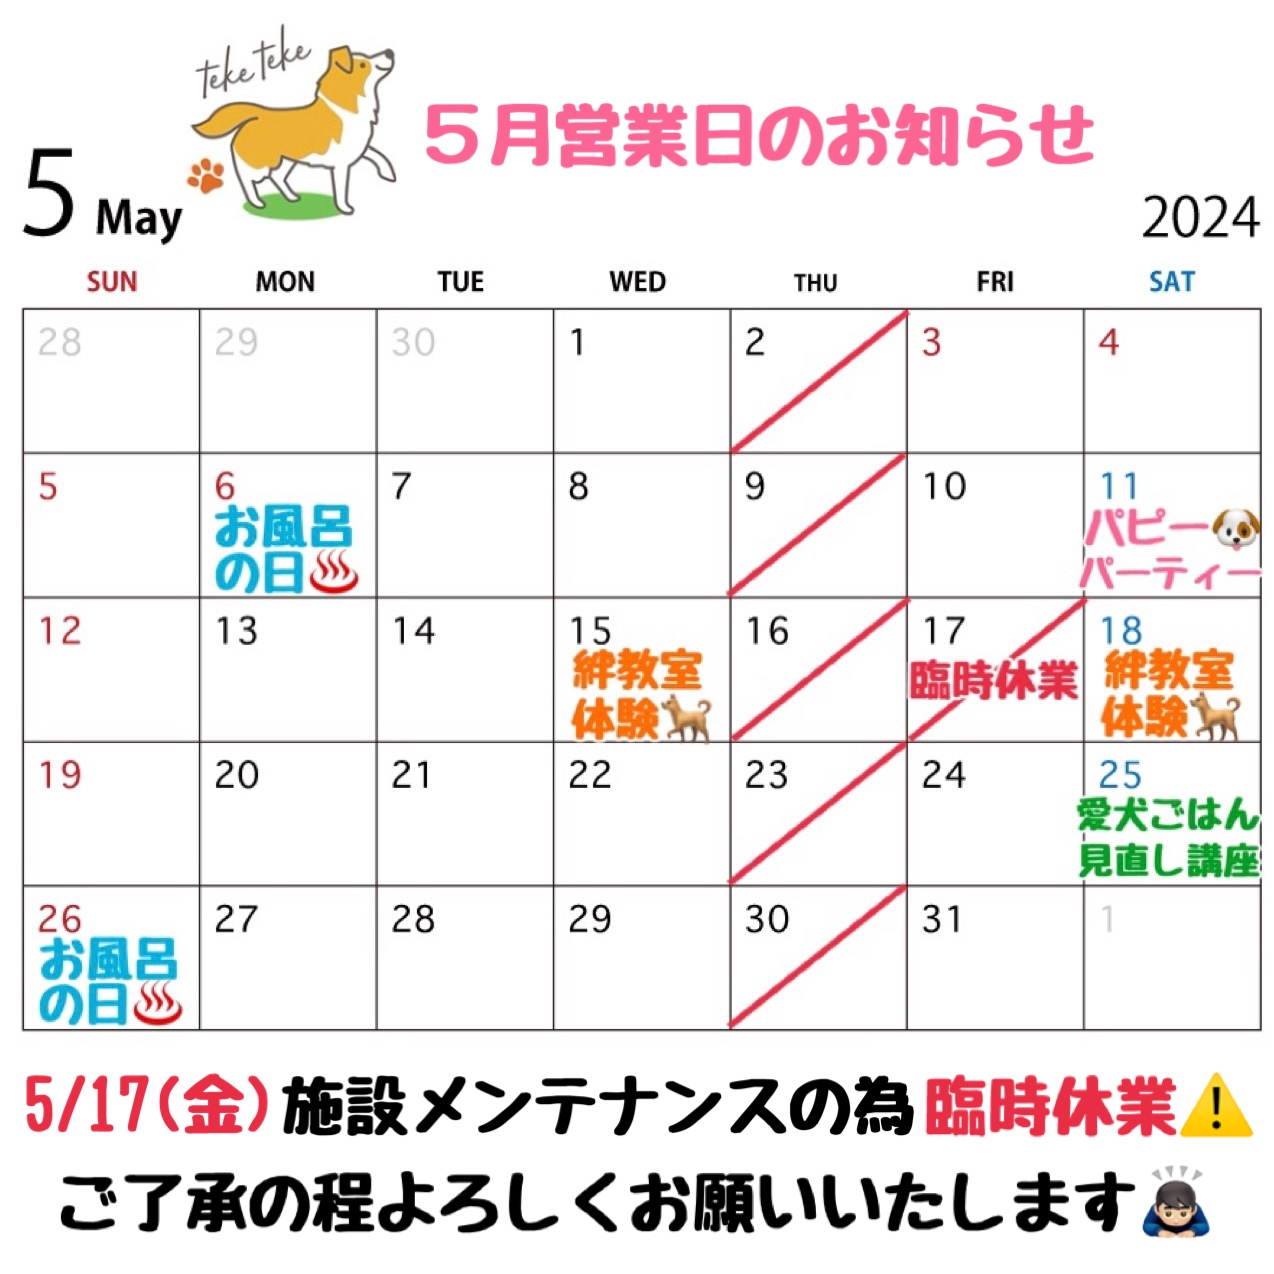 5月営業日カレンダーのお知らせです🗓